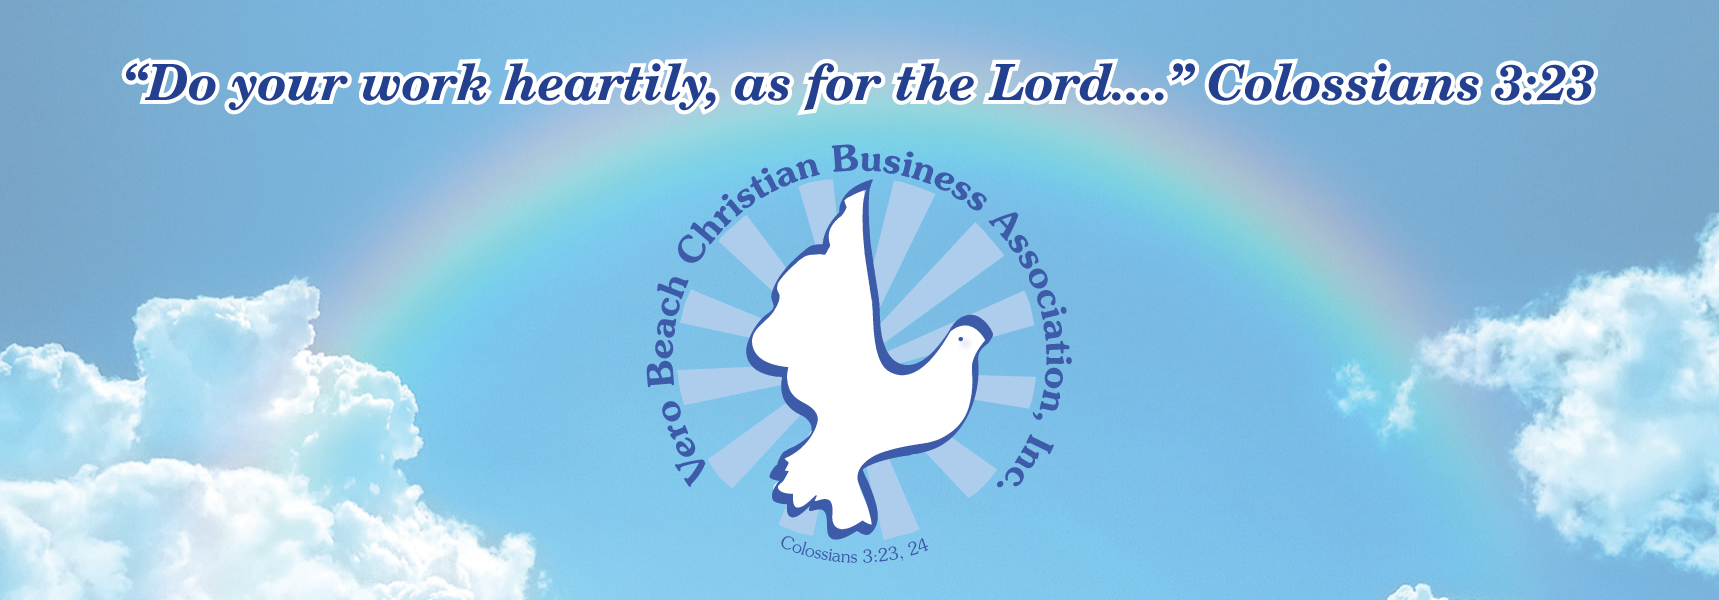 Vero Beach Christian Business Association